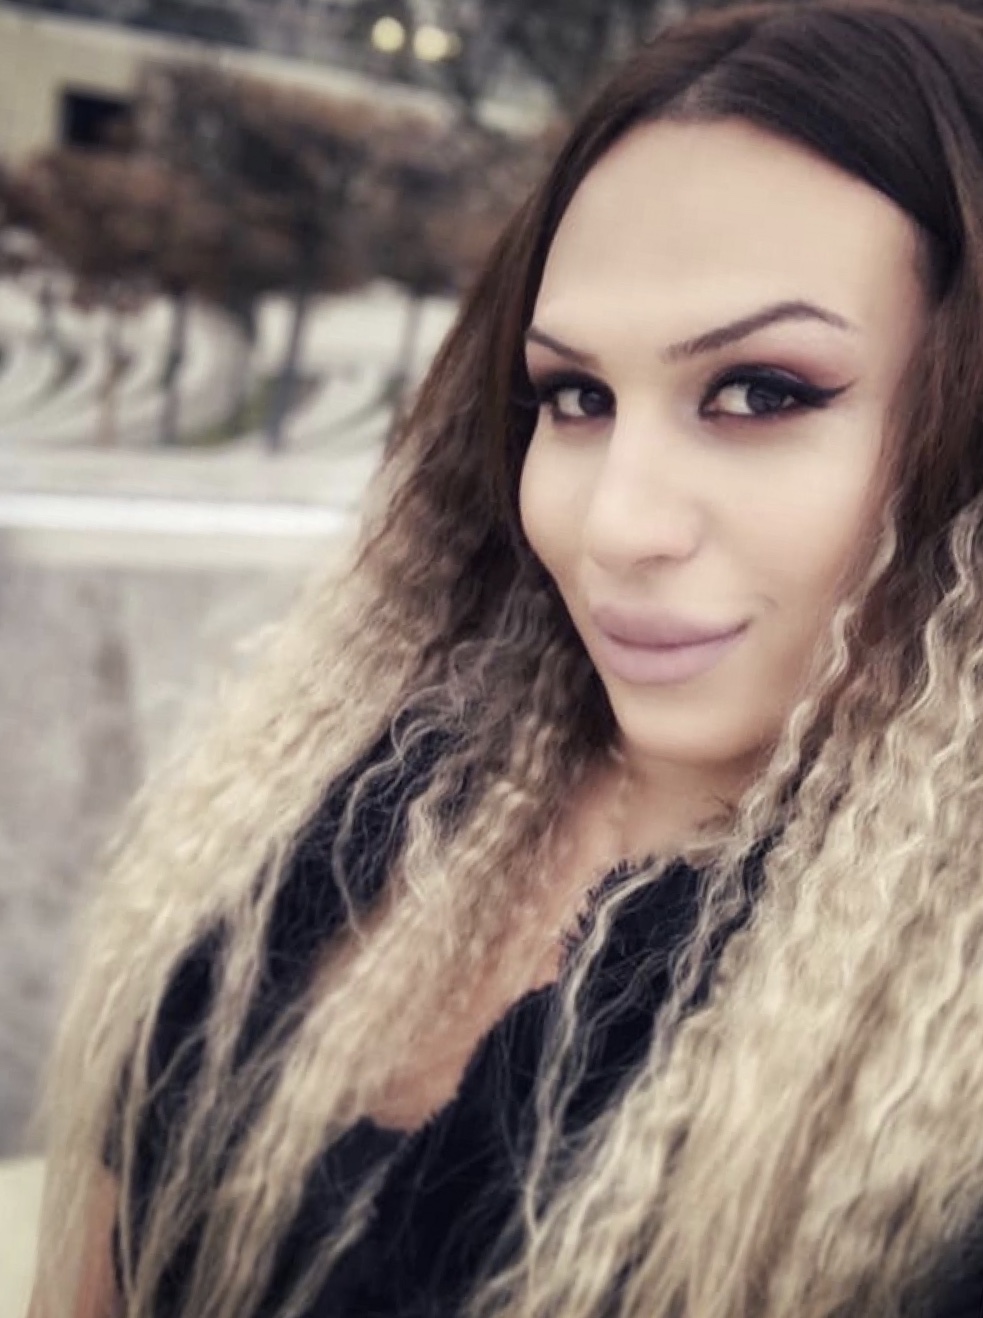 Эскорт Транссексуалка Дина 25 лет сделает профессионально госпожа и позовет в гости